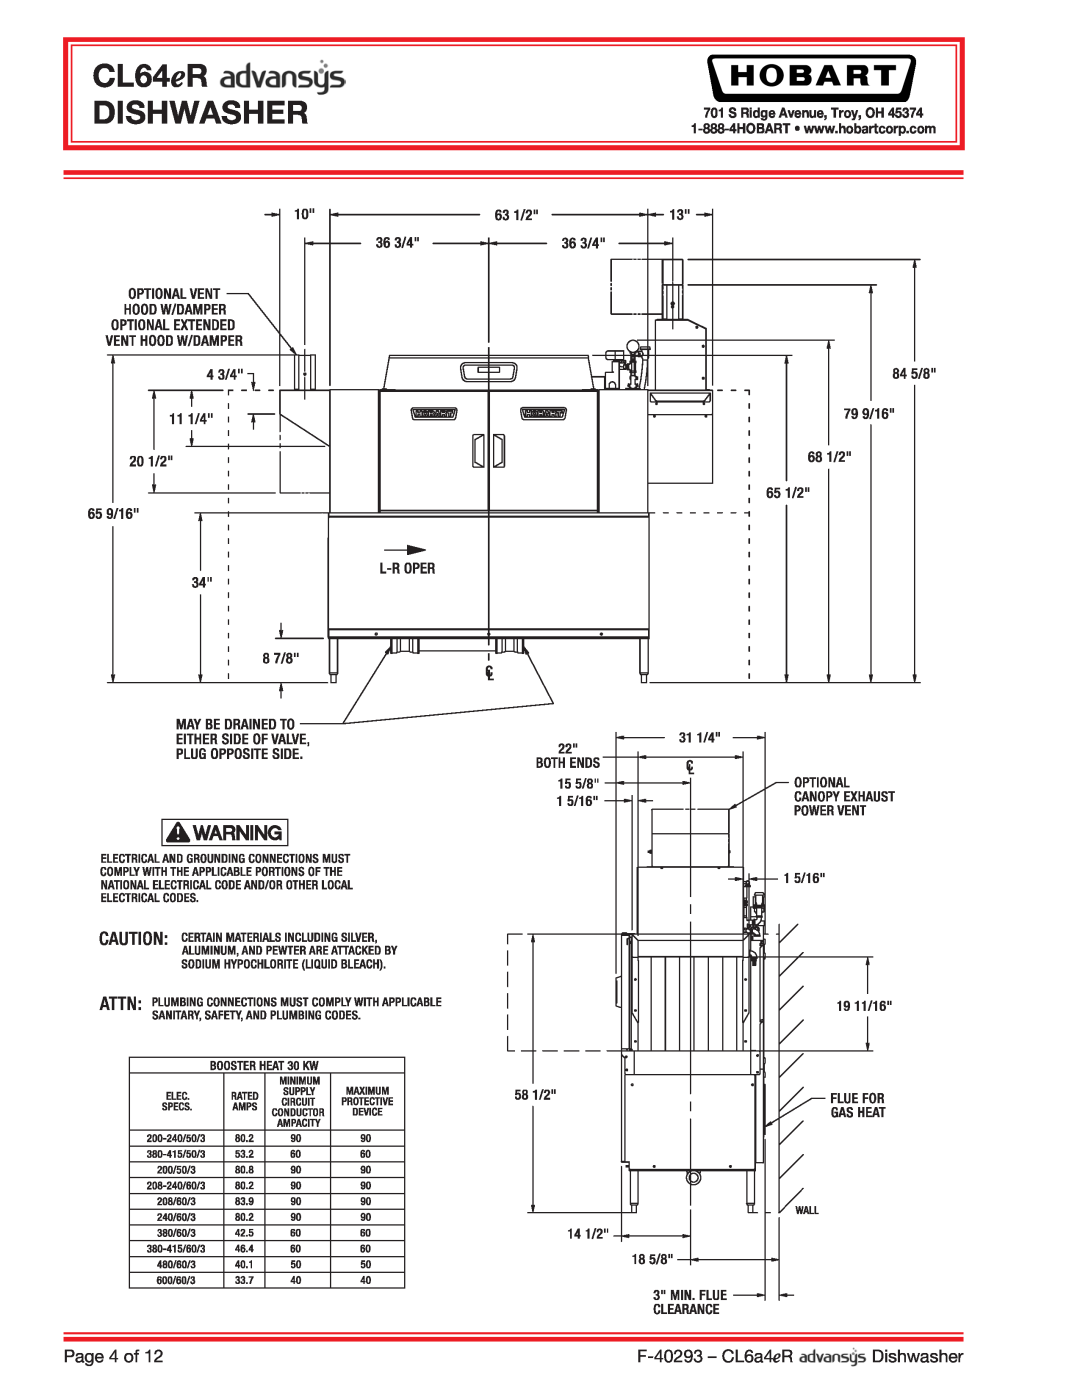 Hobart CL64ER dimensions CL64eR DISHWASHER, Page 4 of, F-40293 - CL6a4eR, Dishwasher, S Ridge Avenue, Troy, OH 